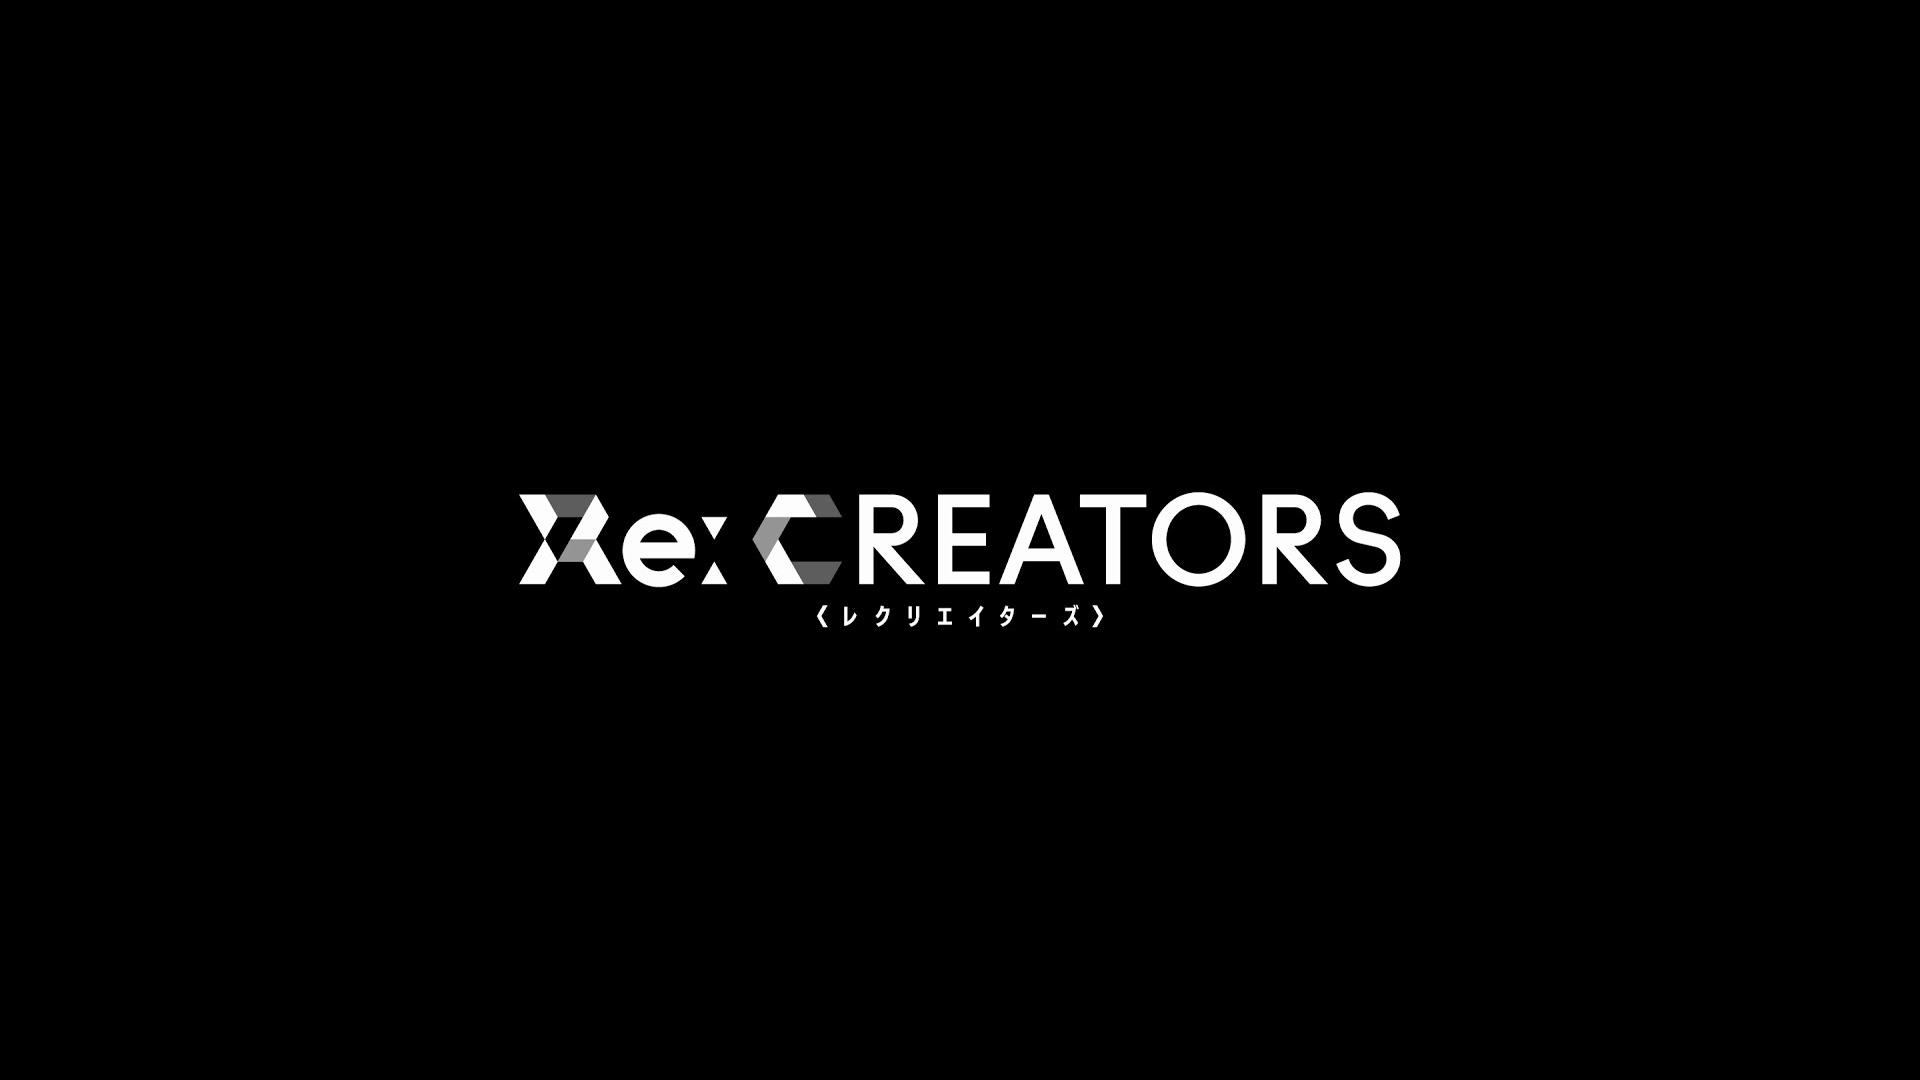 Re Creators 1920x1080